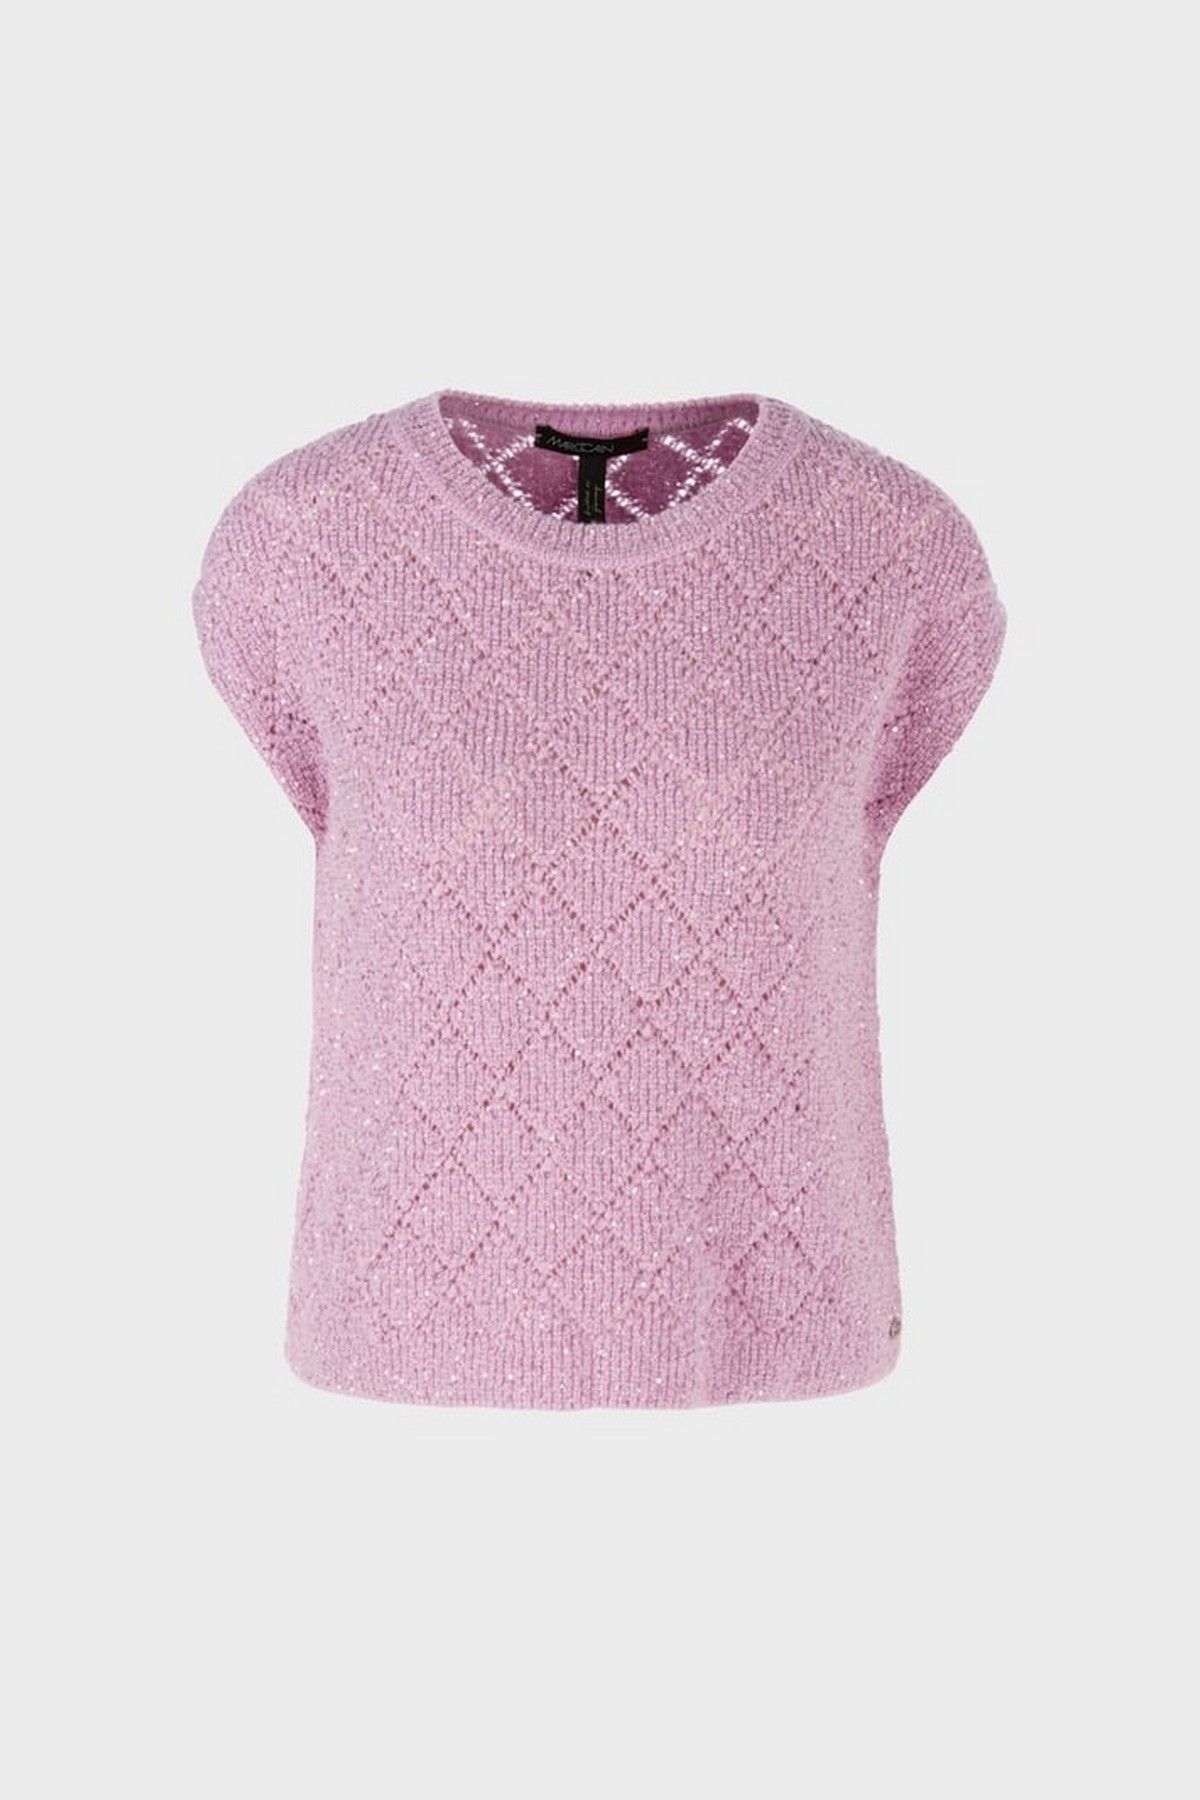 Pull zonder mouw ajour in de kleur pink lavender van het merk Marc Cain Collections